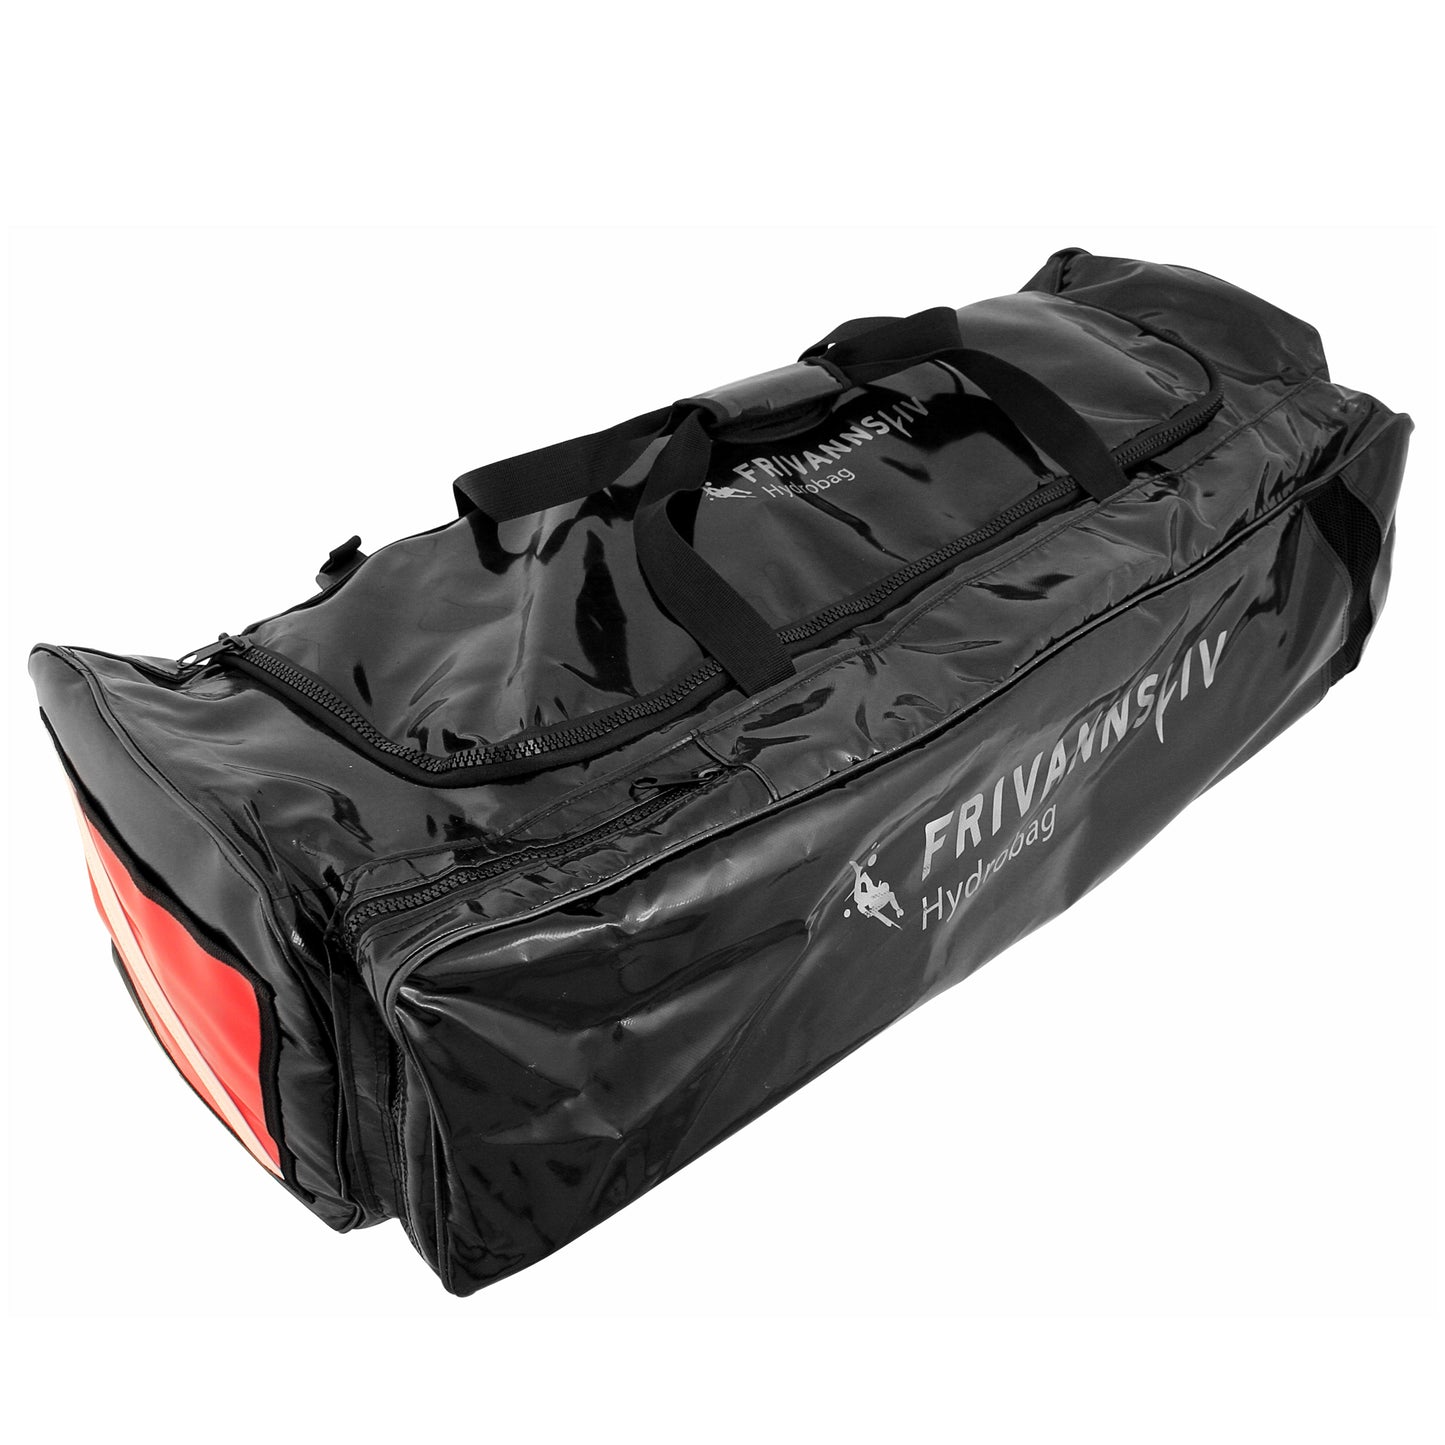 Frivannsliv® Hydrobag diving bag